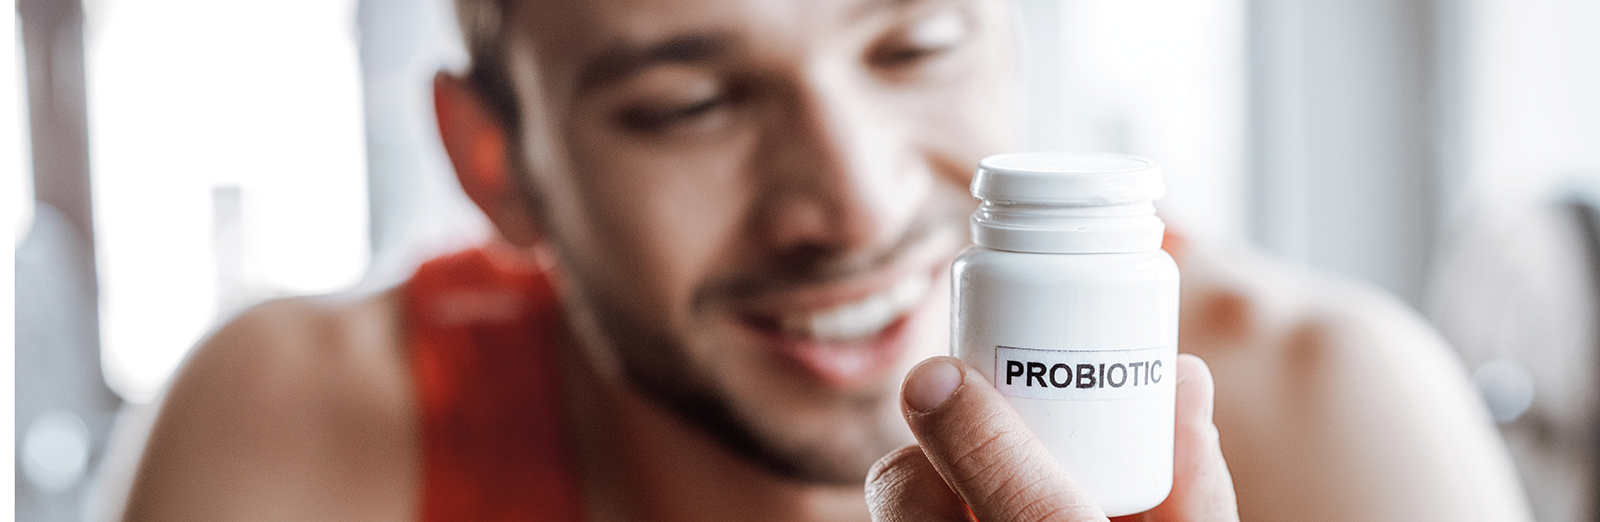 man-looking-at-probiotics-1600x522.png